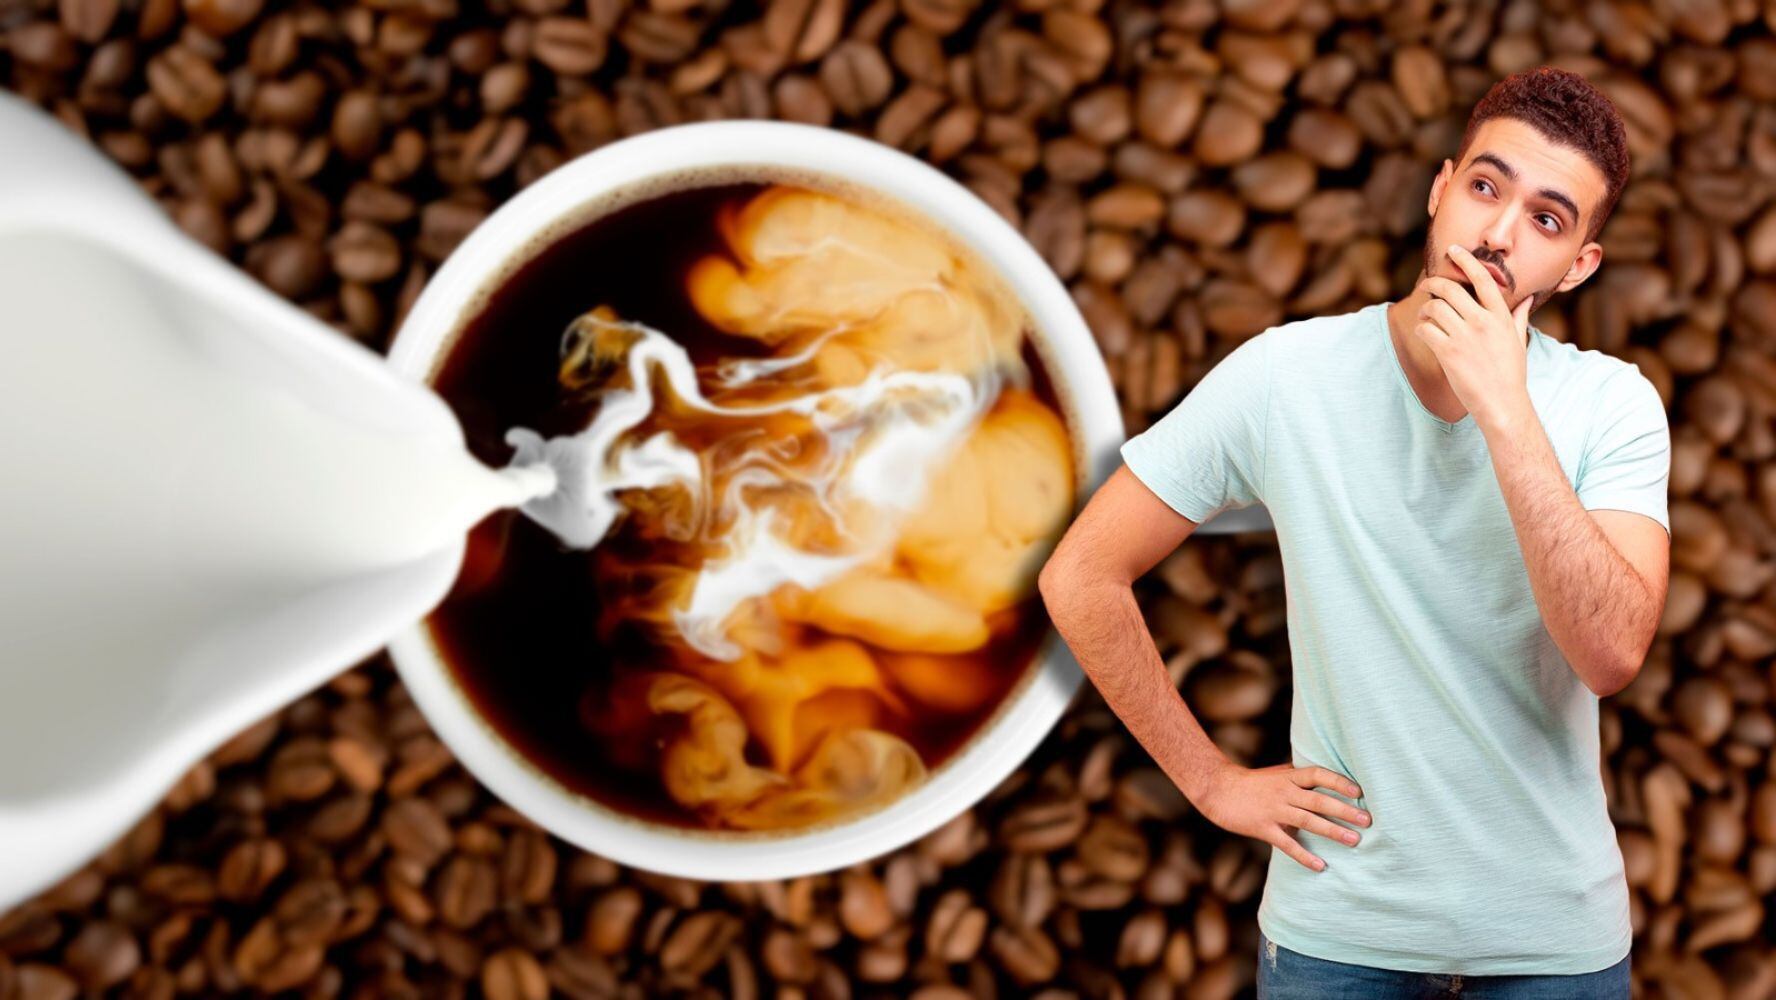 Aunque es una de las bebidas más populares, el café con leche debería tomarse con moderación. (Foto: Especial)